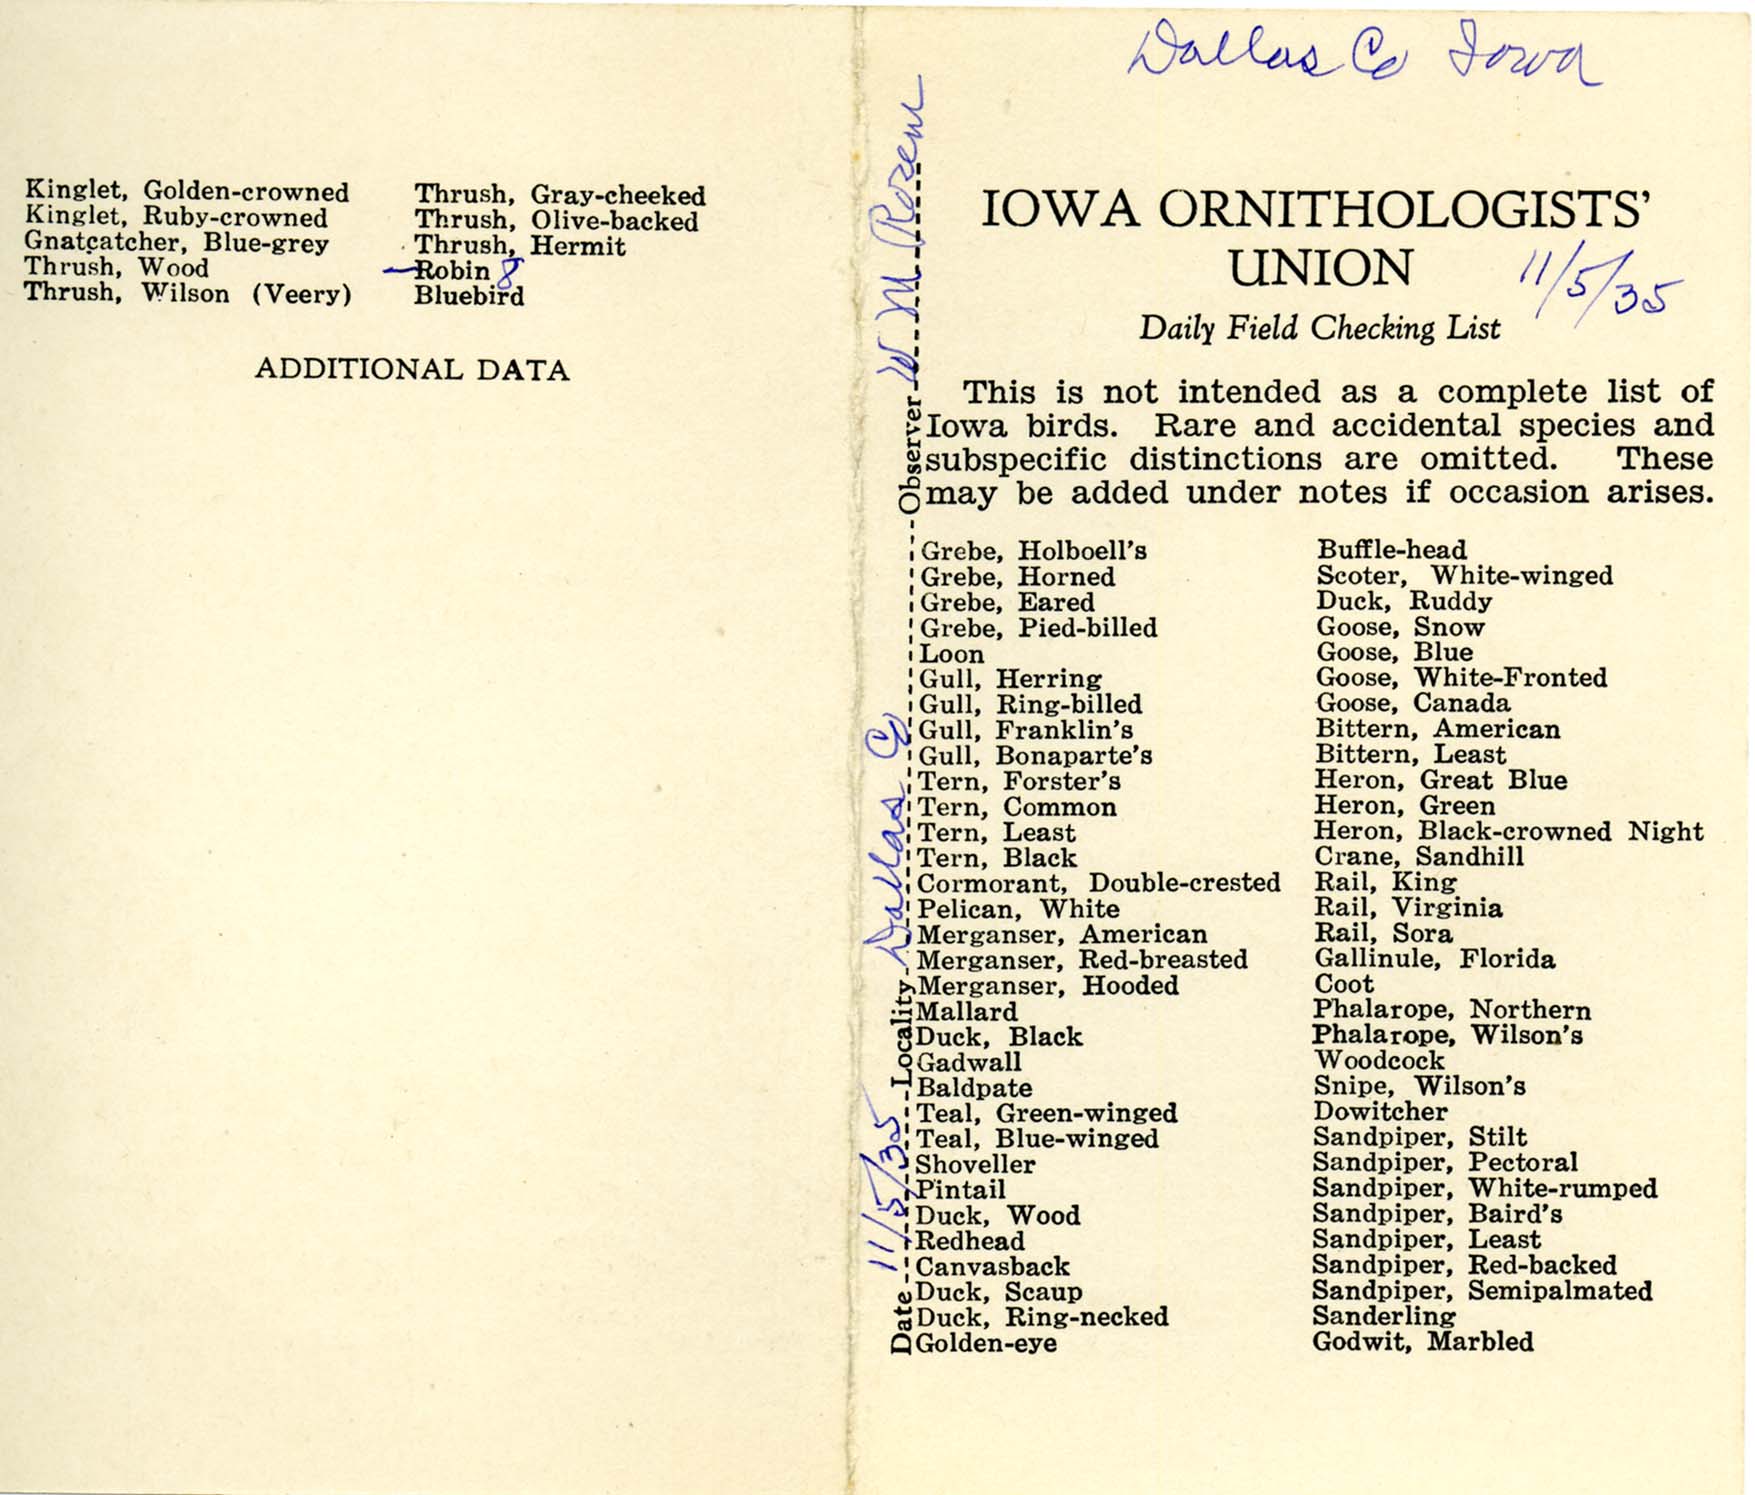 Daily field checking list, Walter Rosene, November 5, 1935